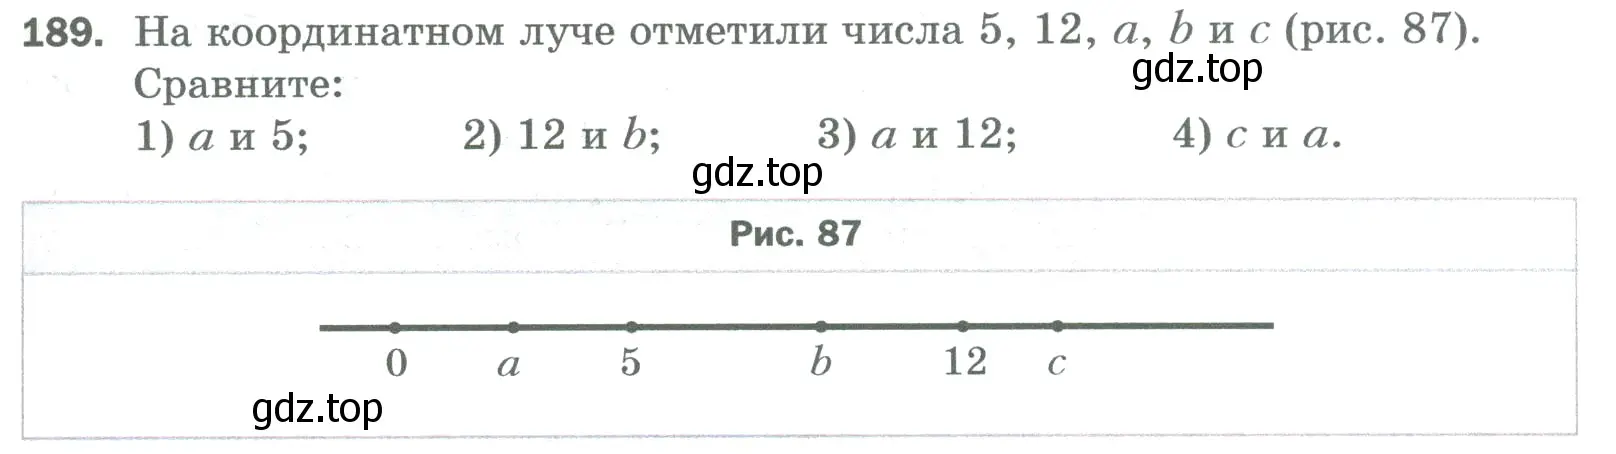 Условие номер 189 (страница 51) гдз по математике 5 класс Мерзляк, Полонский, учебник